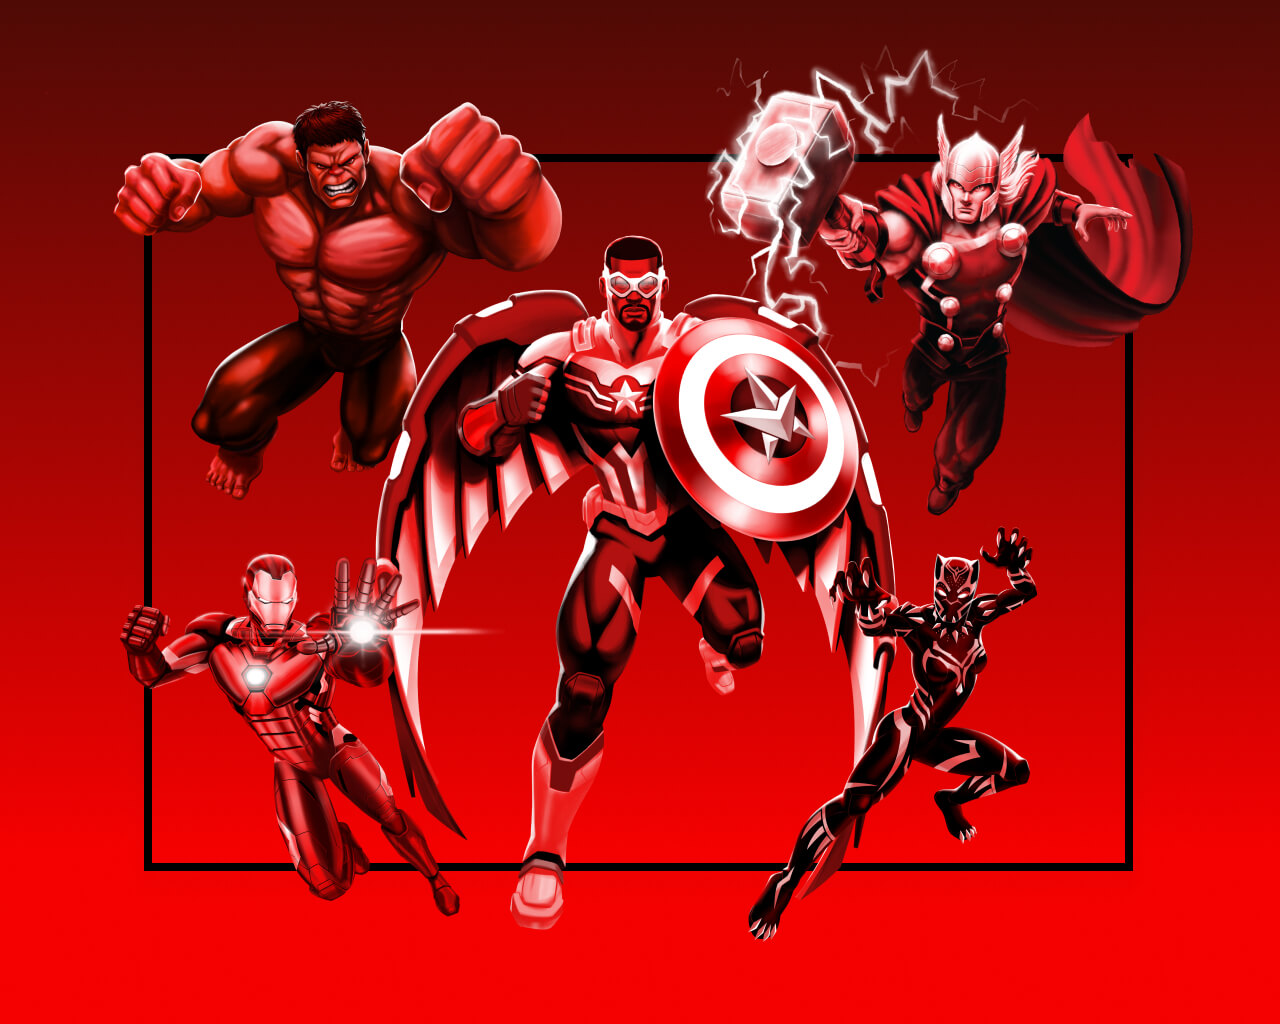 El capitán América al centro, a su derecha se encuentran Hulk y Iron-Man listos para atacar. Y a su izquierda Thor y Black Panther sobre un fondo rojo.